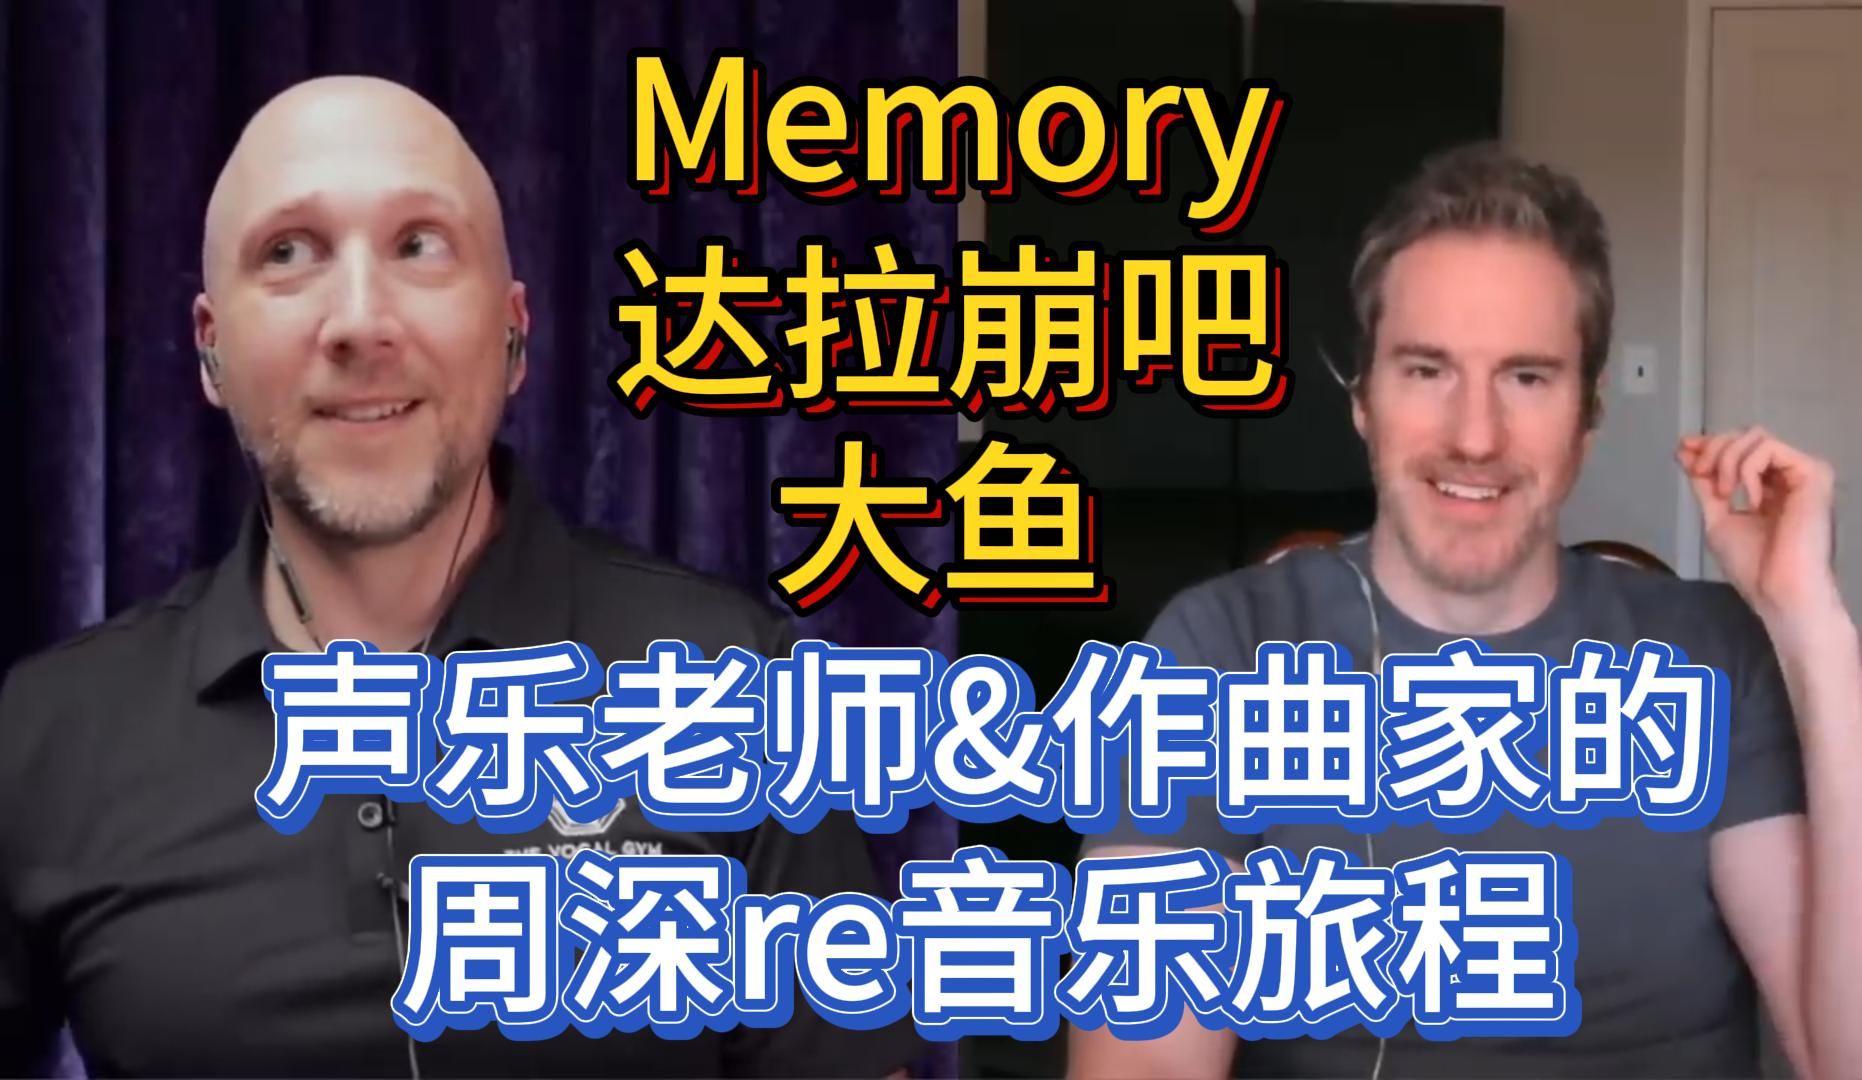 中文自译 声乐老师&作曲家周深reaction前三首-Memory-达拉崩吧-大鱼 一起回顾下两位老师是如何一步一步入坑的吧